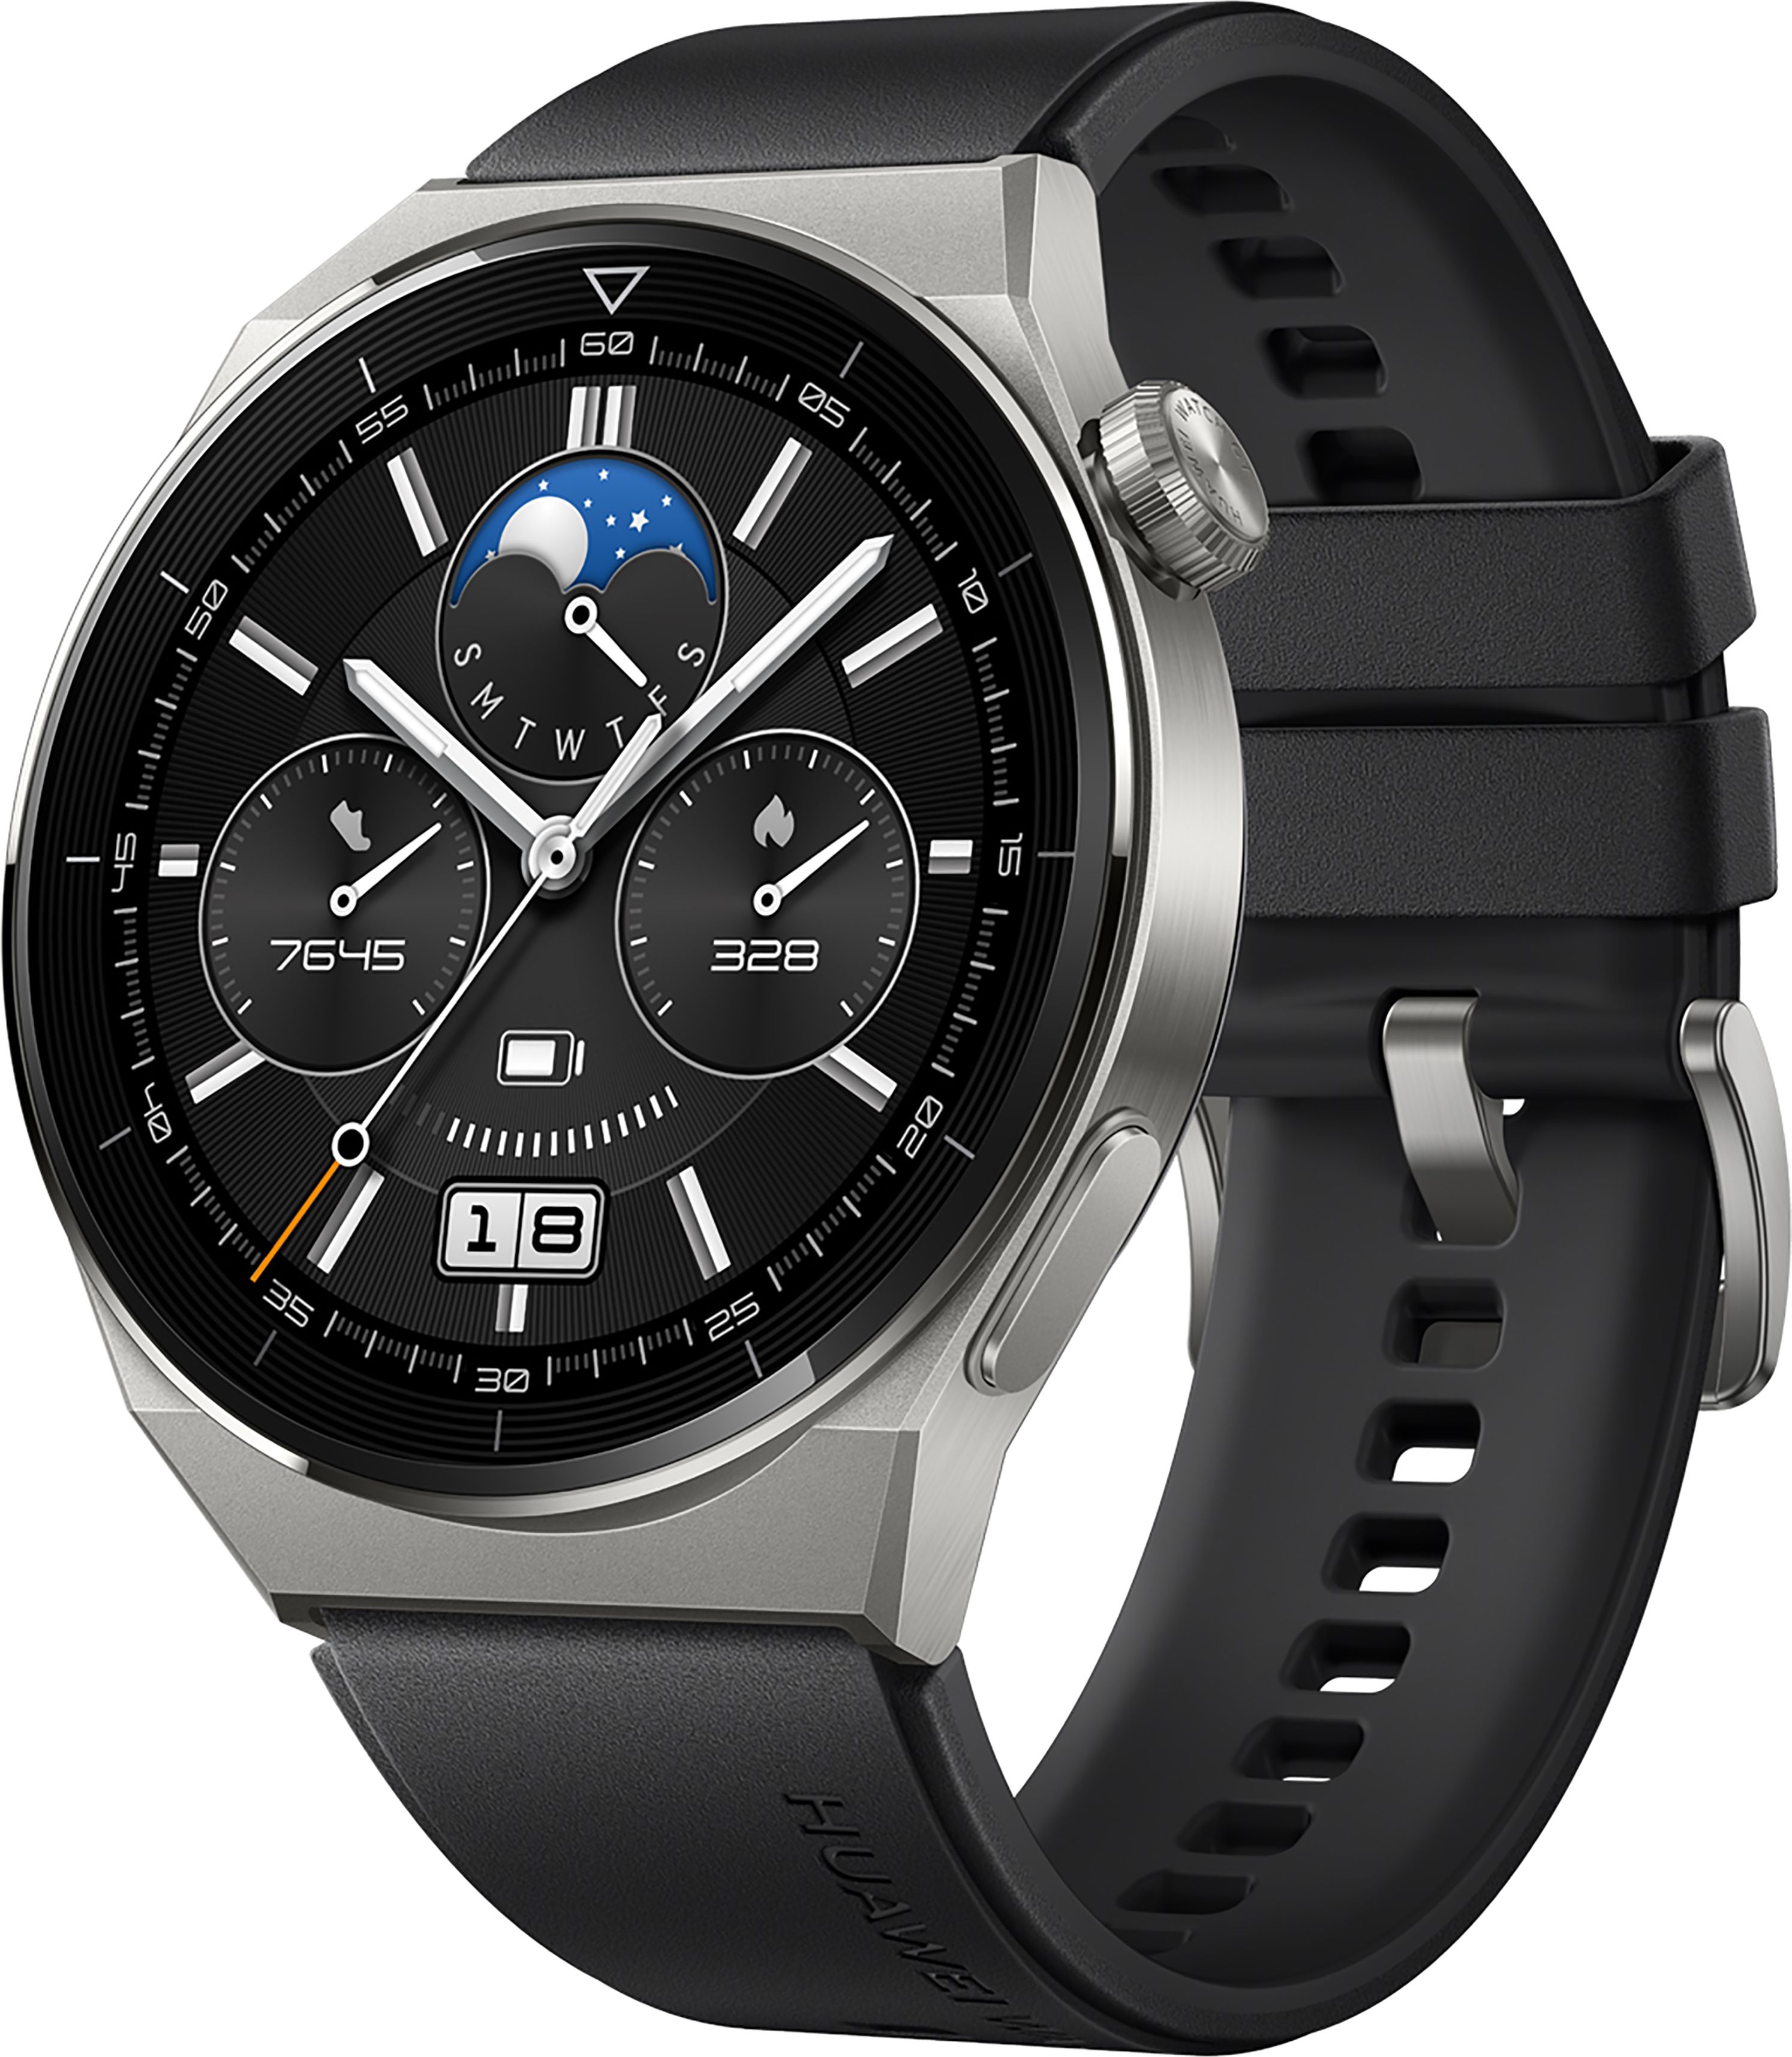 HUAWEI GT 3 Pro Smart Watch - Black, Black